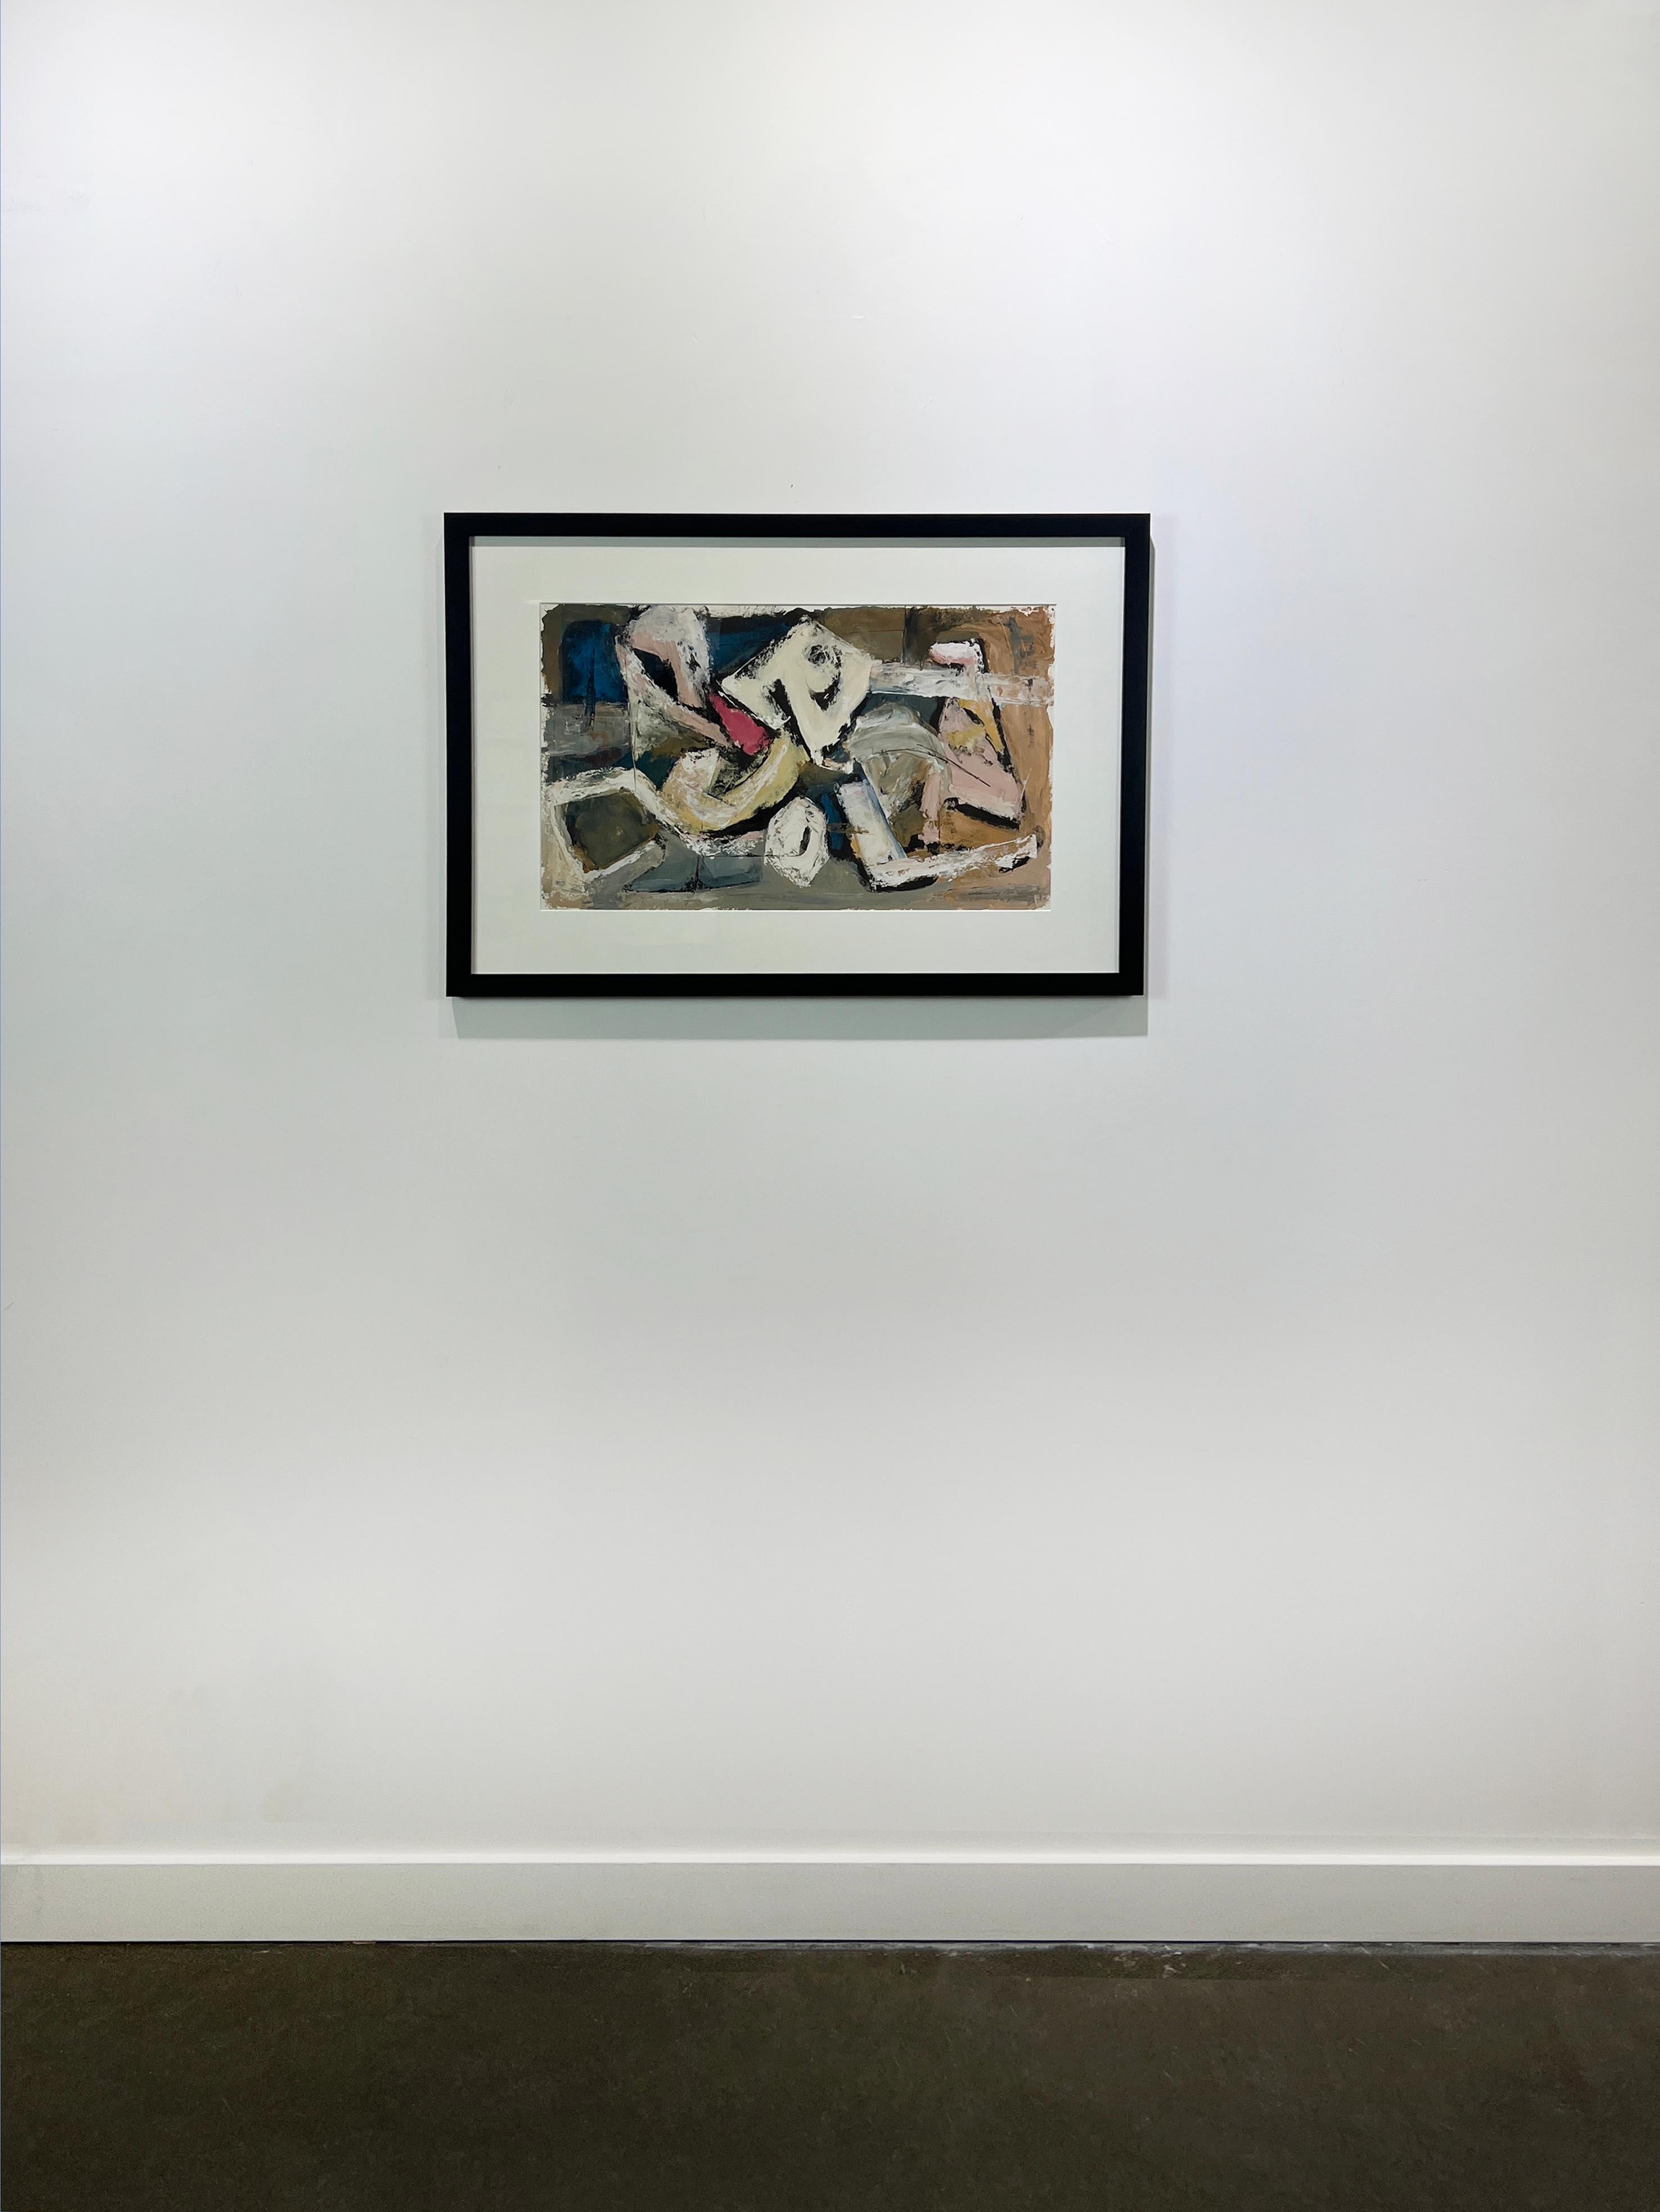 Cette peinture expressionniste abstraite moderne de Stanley Bate est réalisée à la gouache sur papier. Il se caractérise par une palette sourde et des coups de pinceau larges et texturés. Le tableau lui-même mesure 13